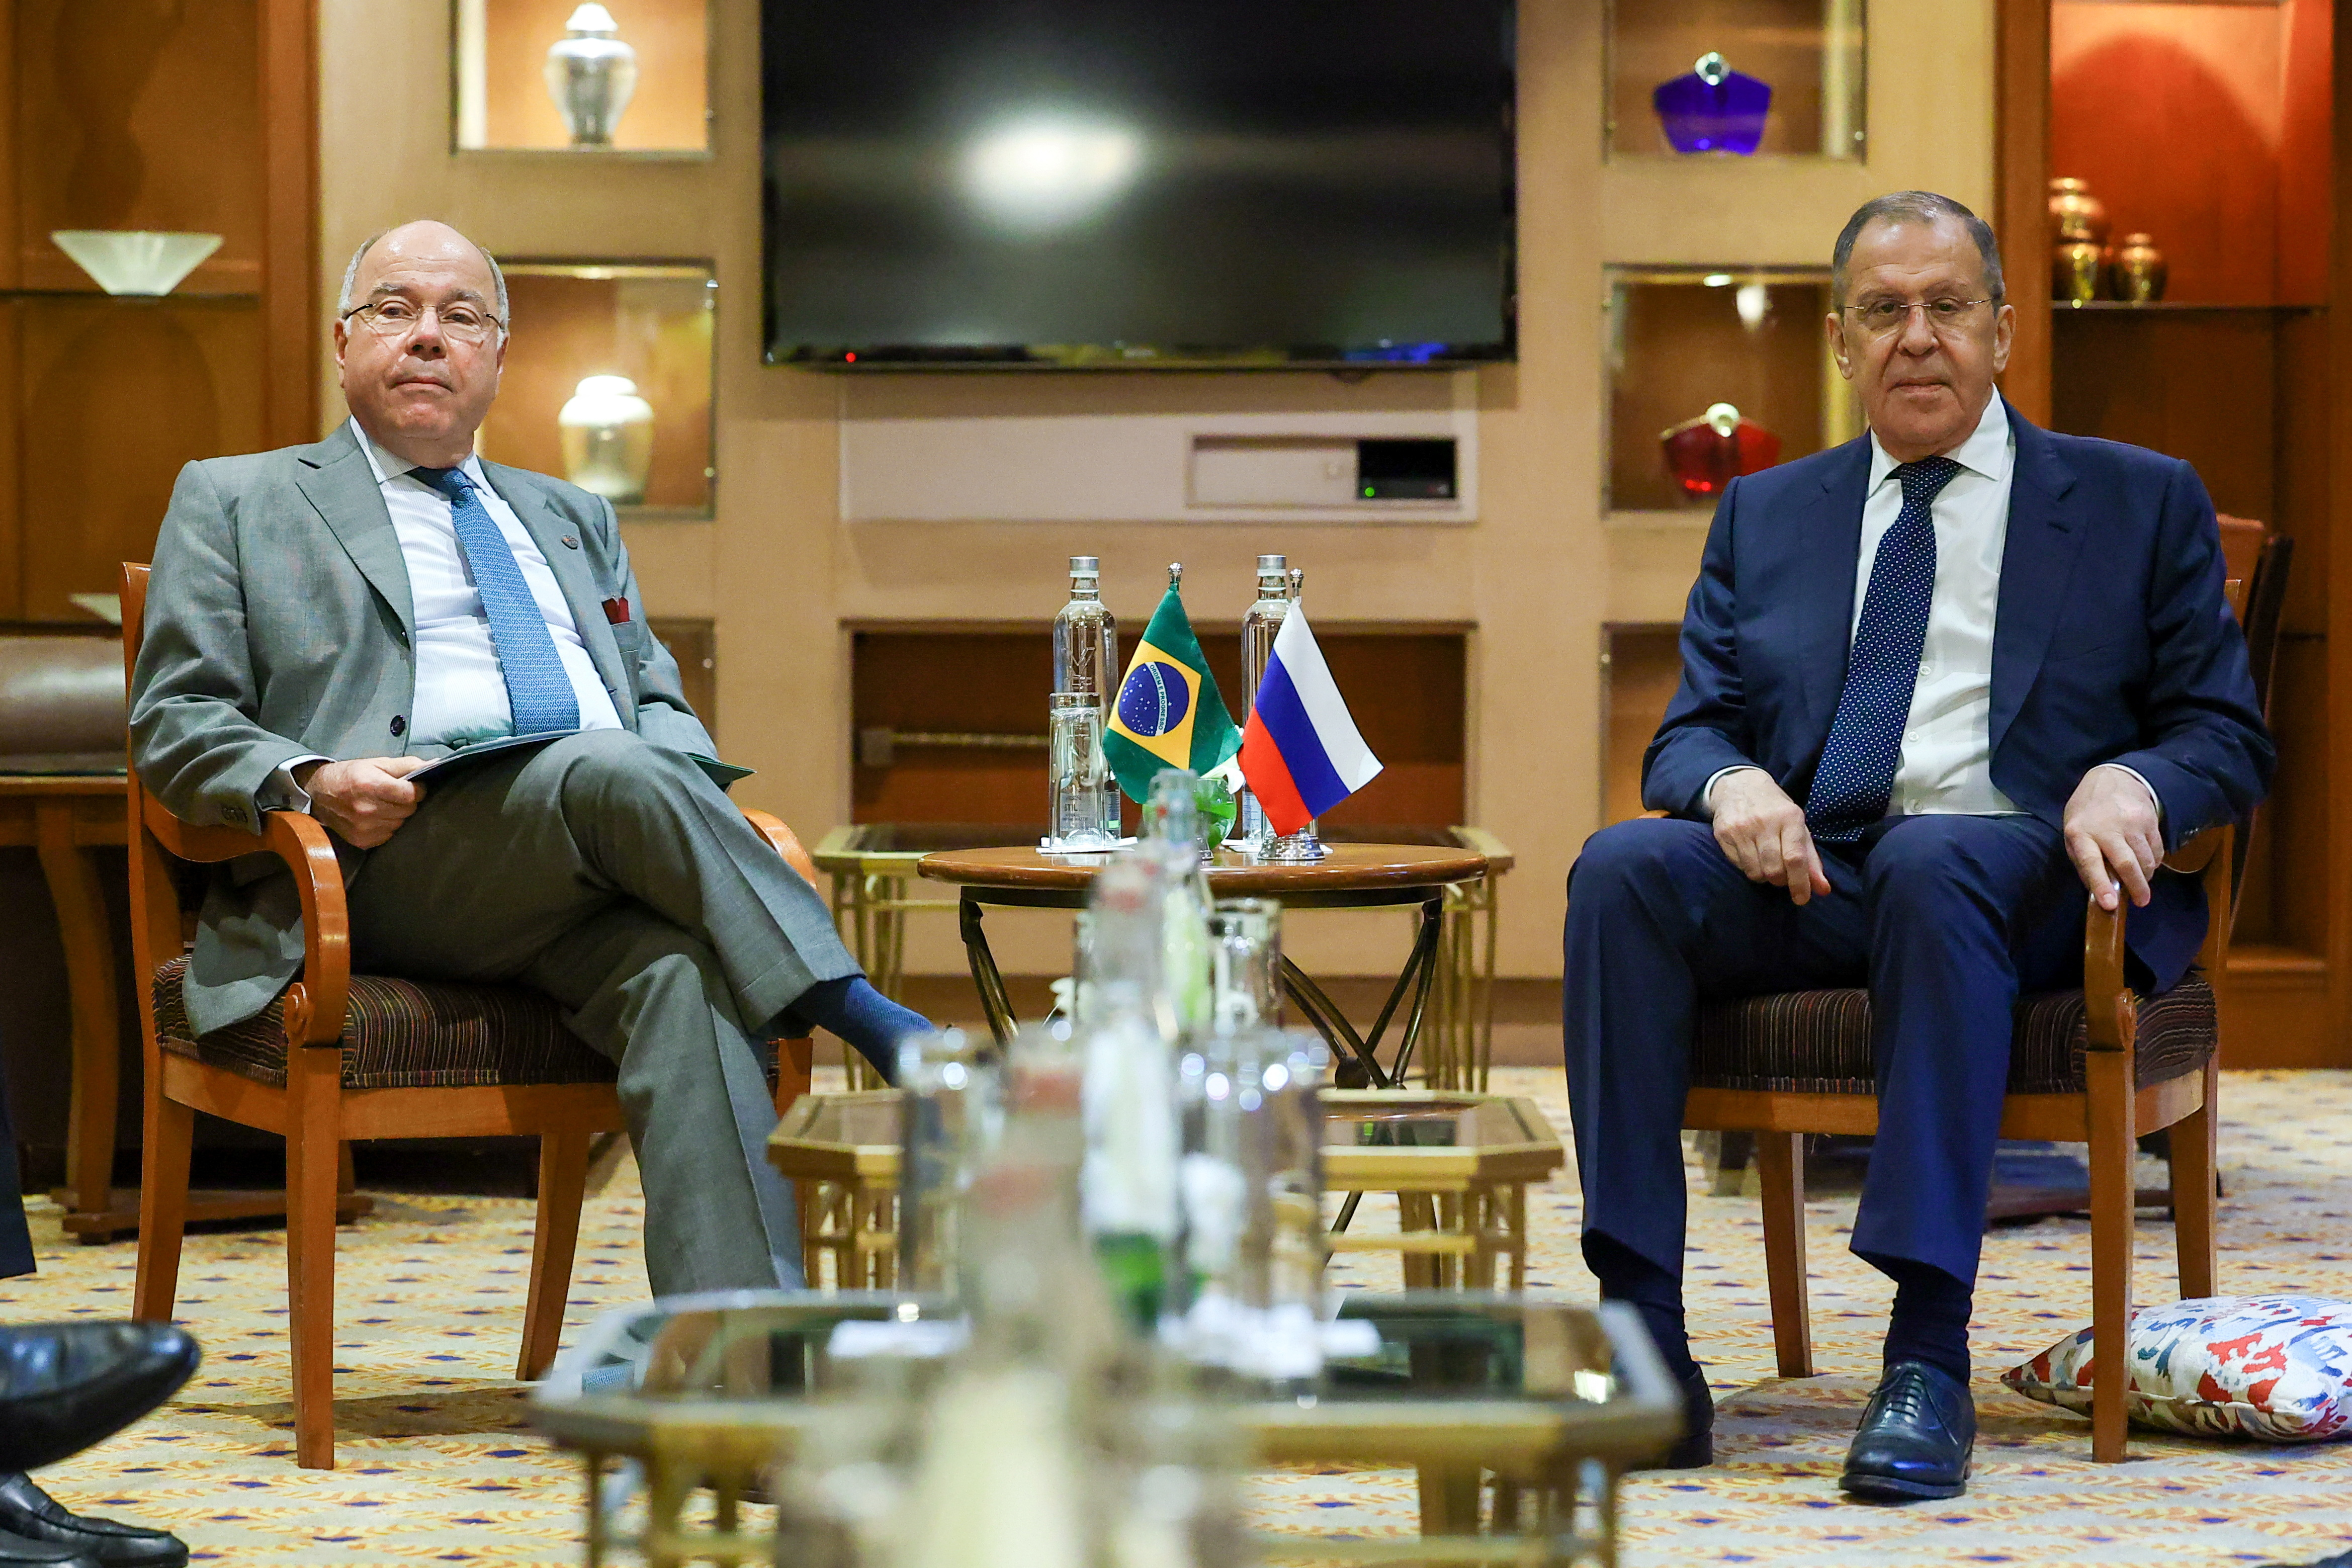 El ministro de Asuntos Exteriores de Rusia, Sergei Lavrov, se reúne con el ministro de Asuntos Exteriores de Brasil, Mauro Vieira, al margen de la reunión de ministros de Asuntos Exteriores del G20 en Nueva Delhi, India, 1 de marzo de 2023 (Reuters)